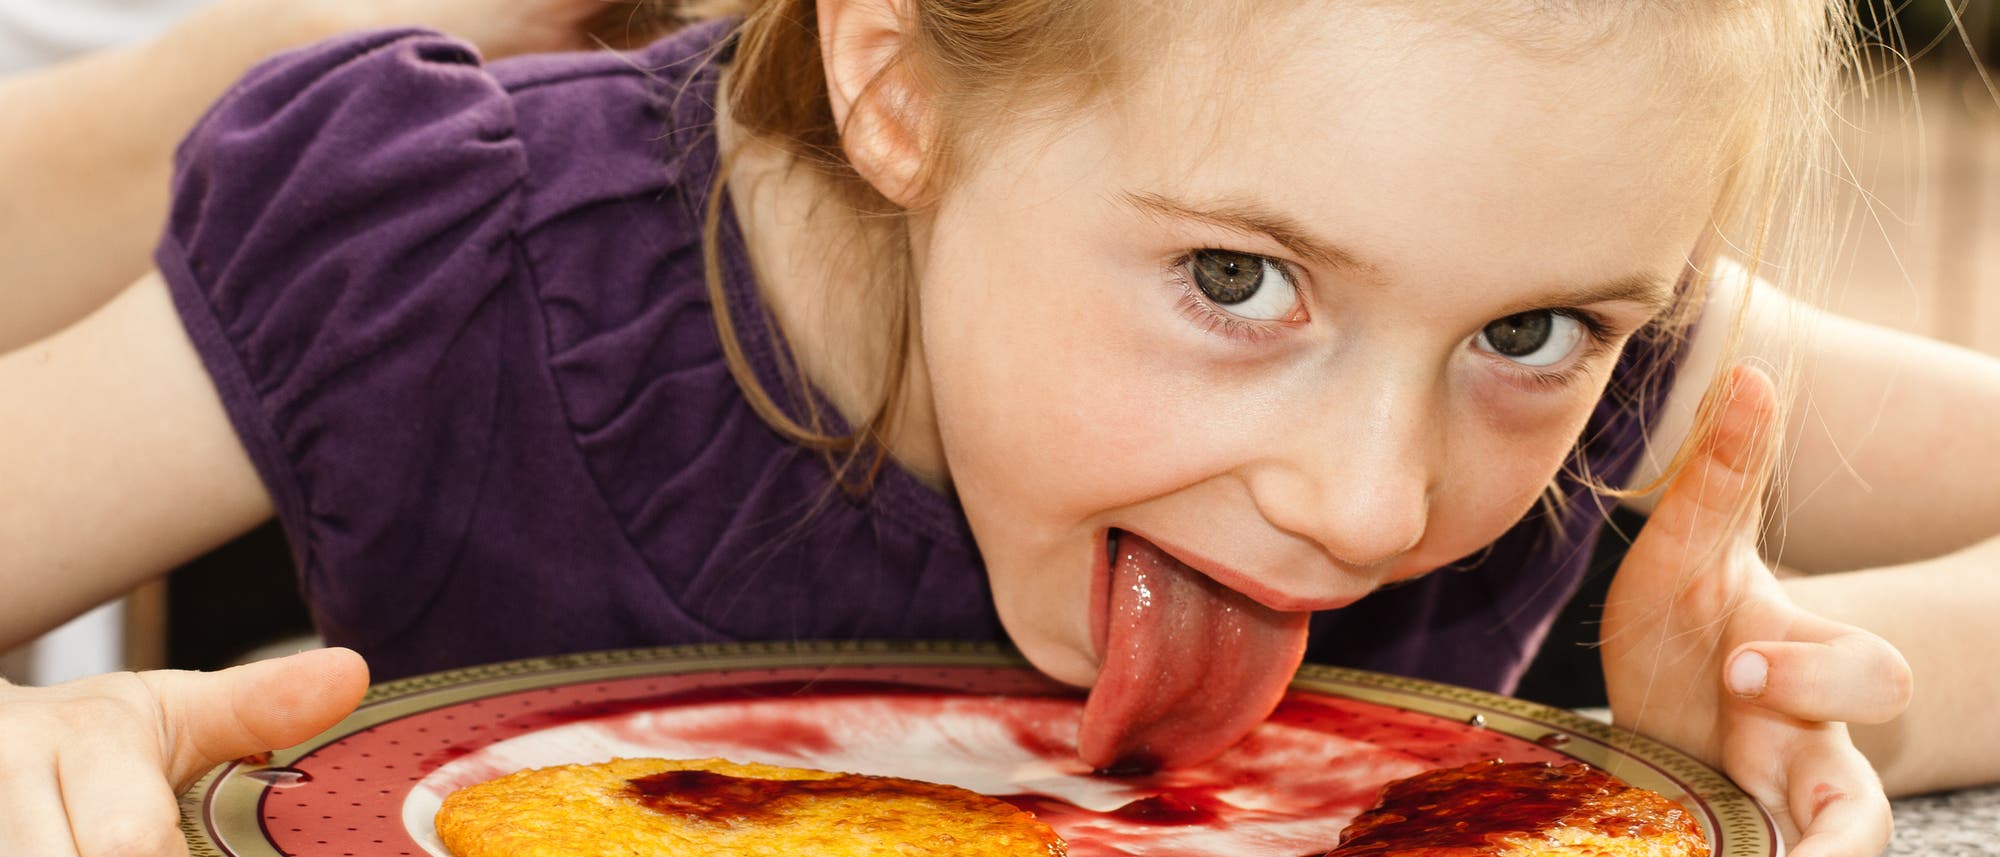 Kind schleckt Teller mit Pfannkuchen und Erdbeersoße